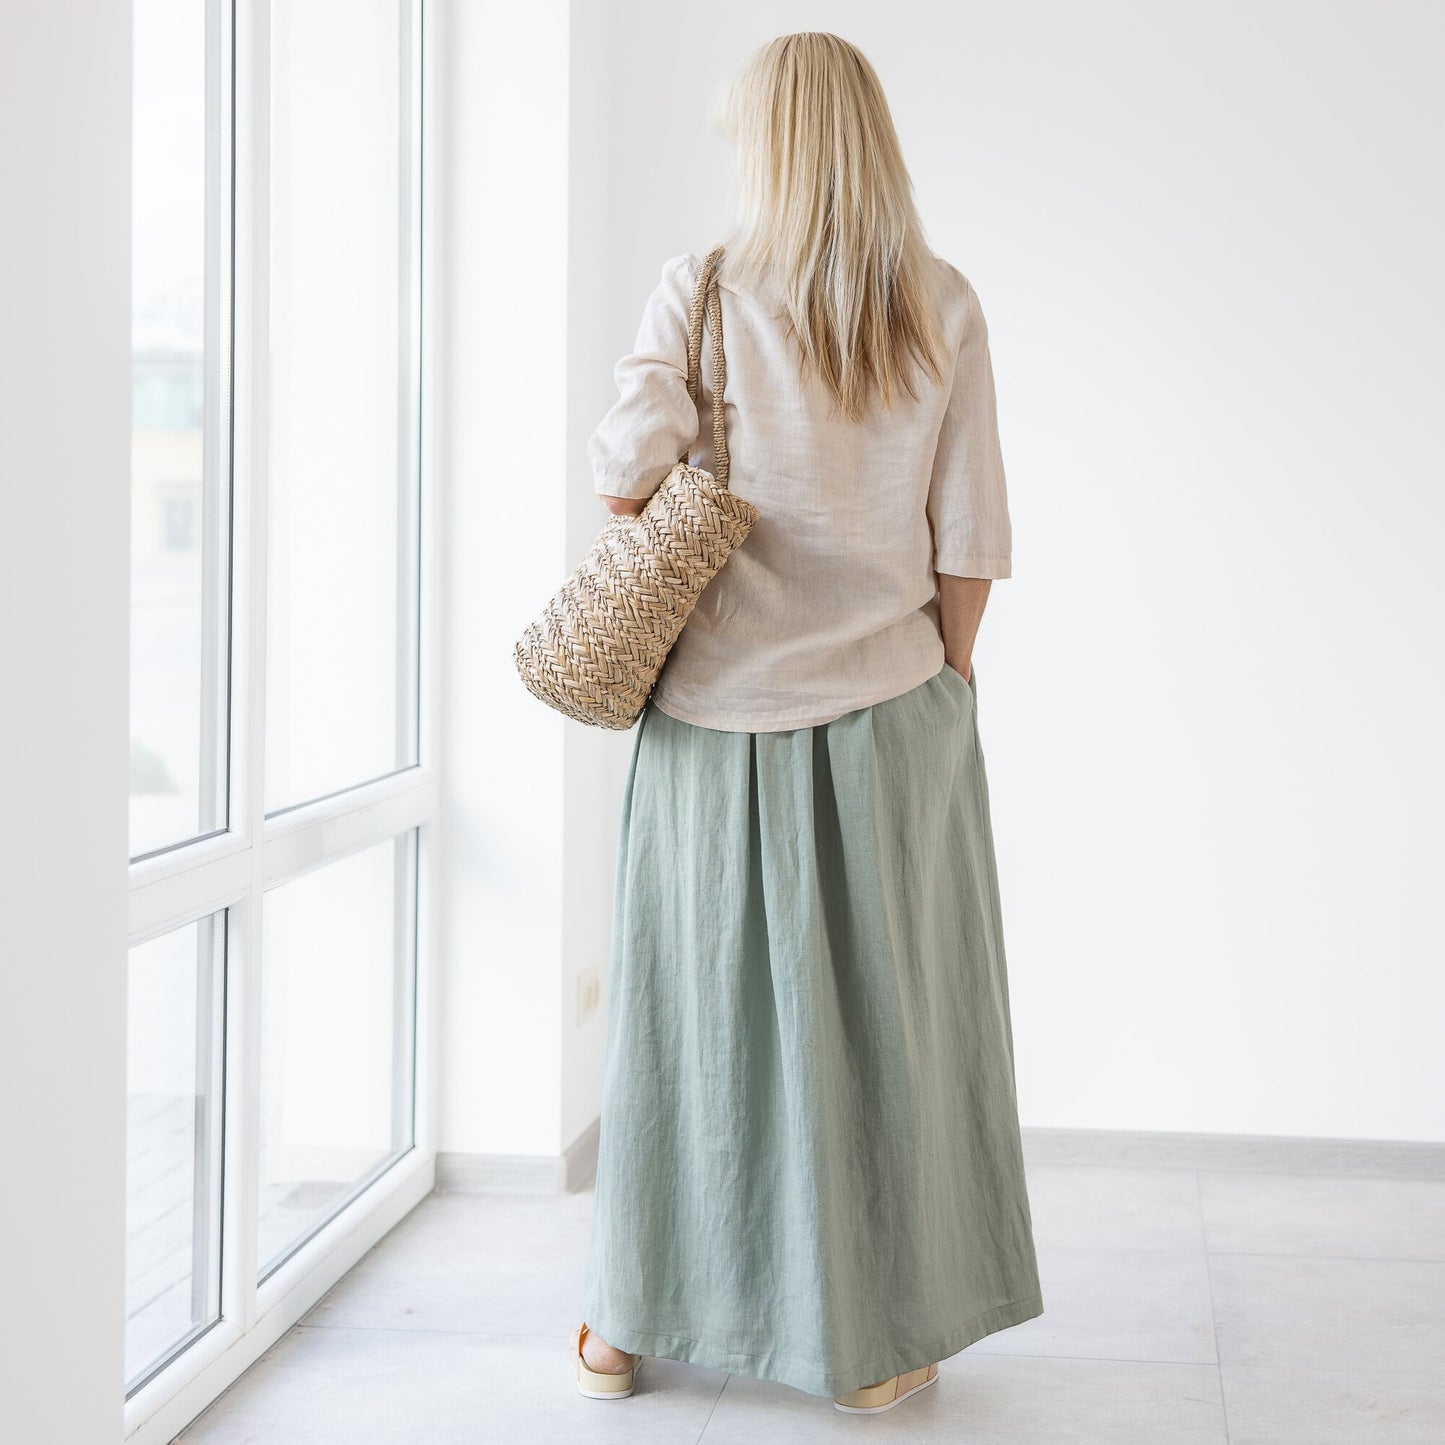 Summer long linen skirt and linen blouse